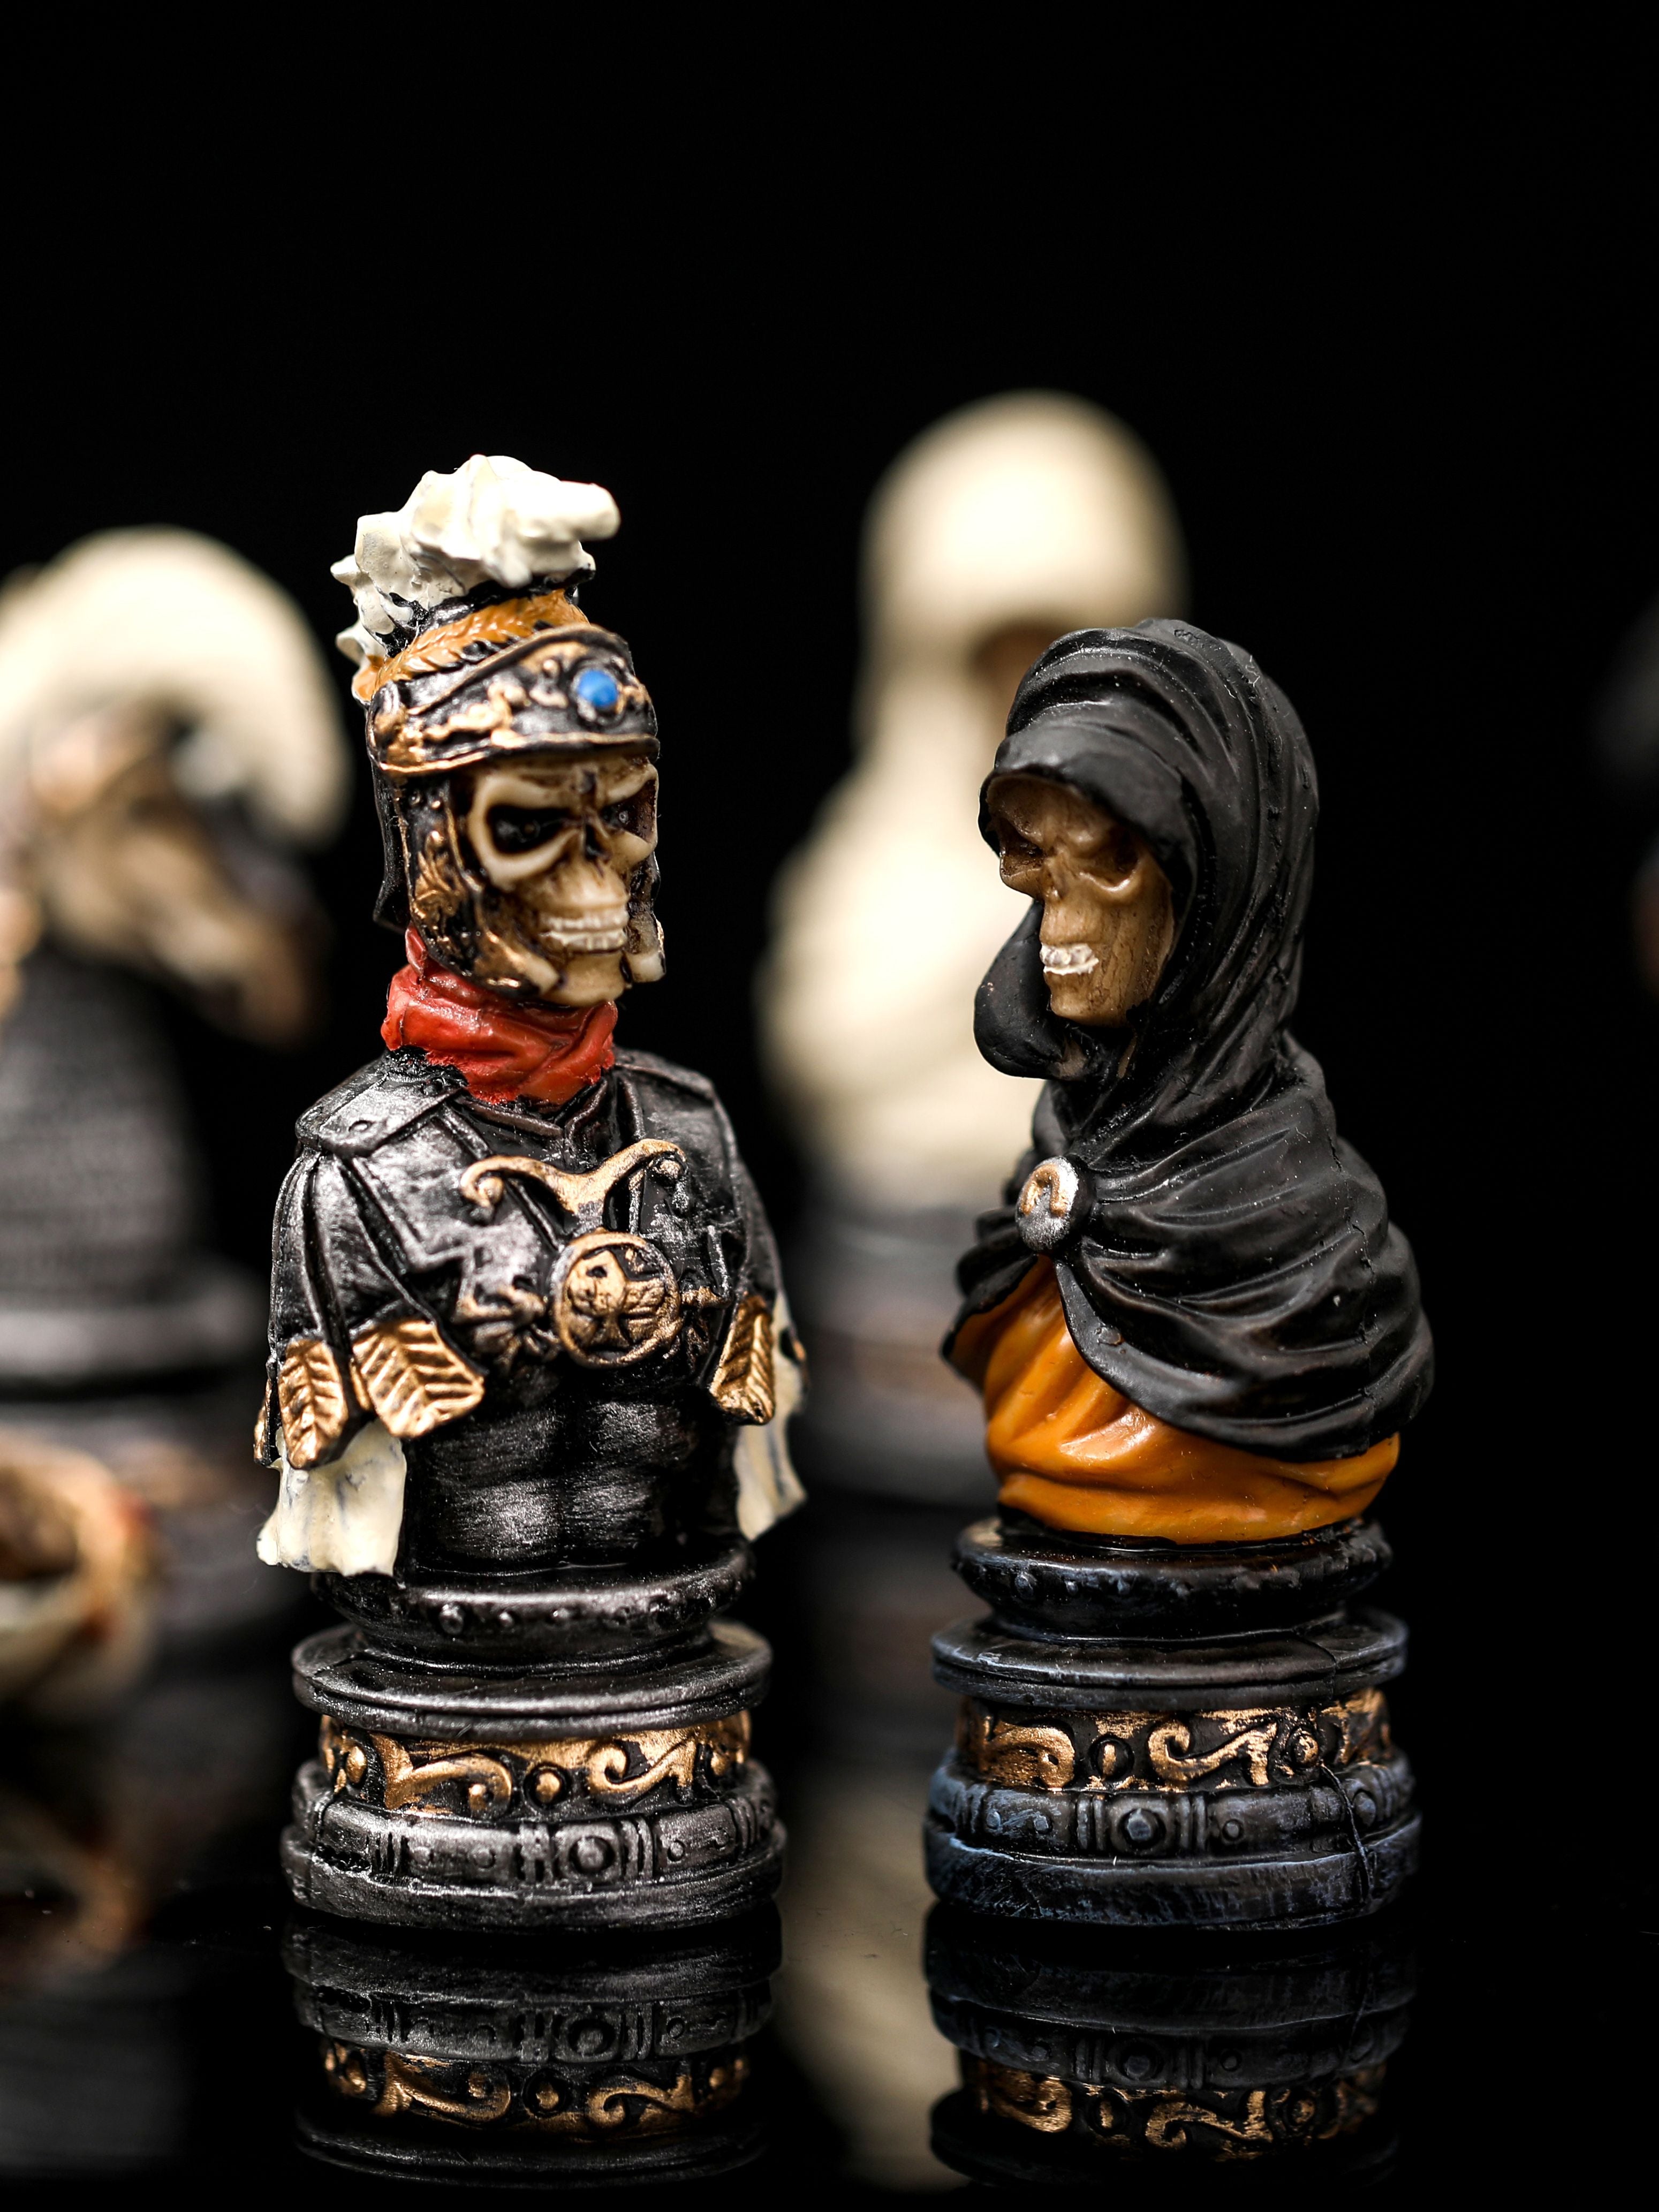 jeu d'échec design jeu d'échec a thème pièces d'échiquier originales et pièces d'échecs en résine avec un jeux d'échecs design en cuir enroulable avec échiquier tête de mort halloween fantôme